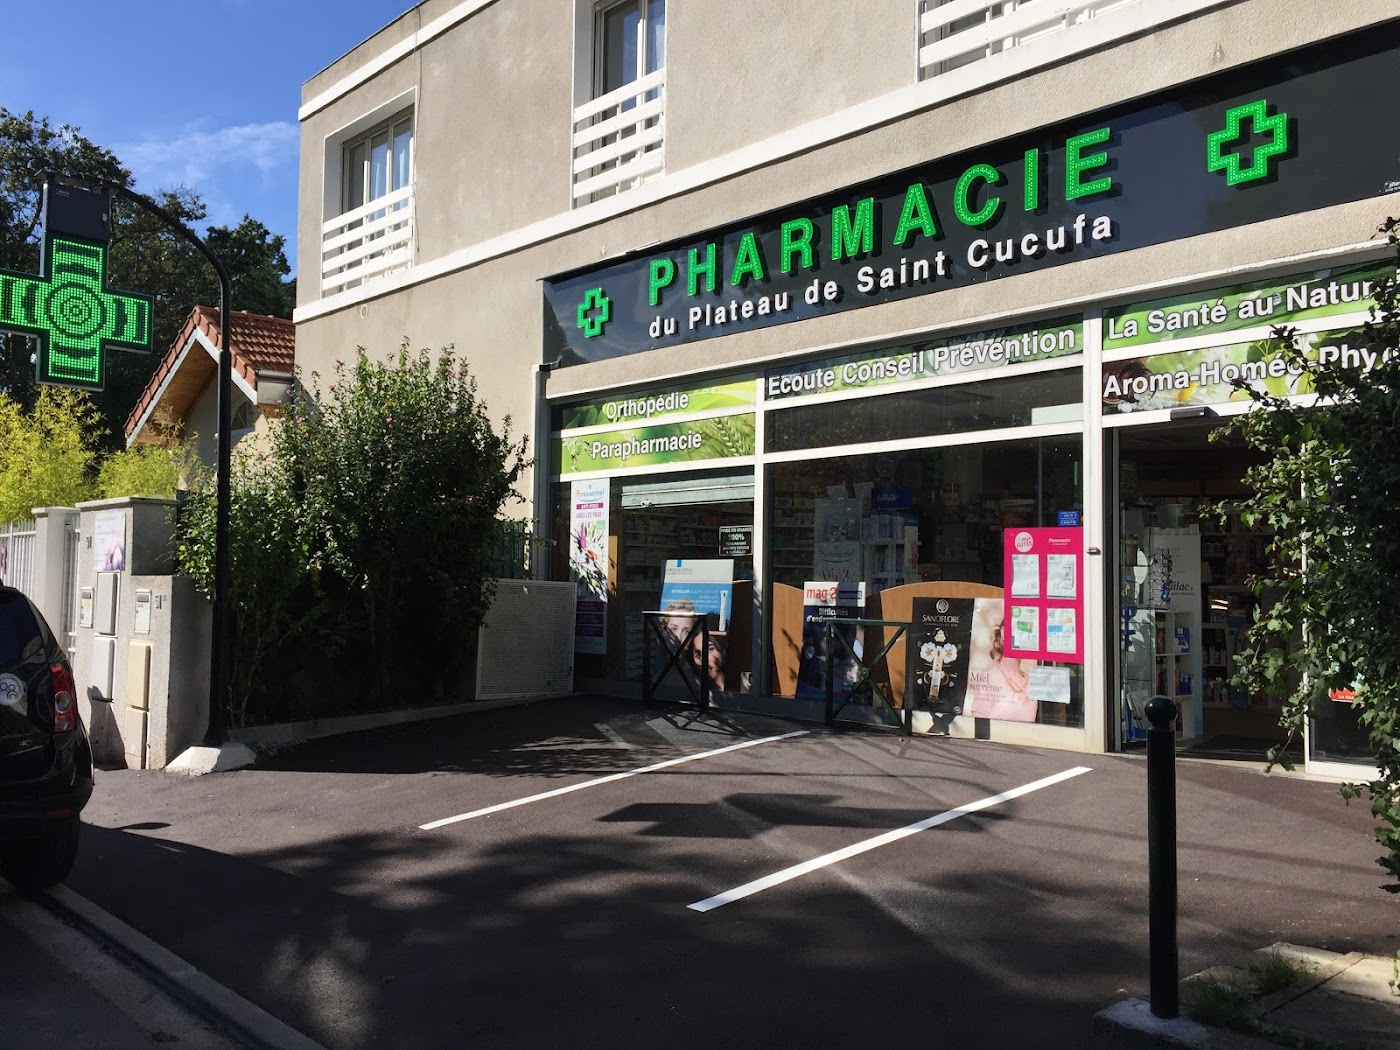 Pharmacie du Plateau de Saint-Cucufa